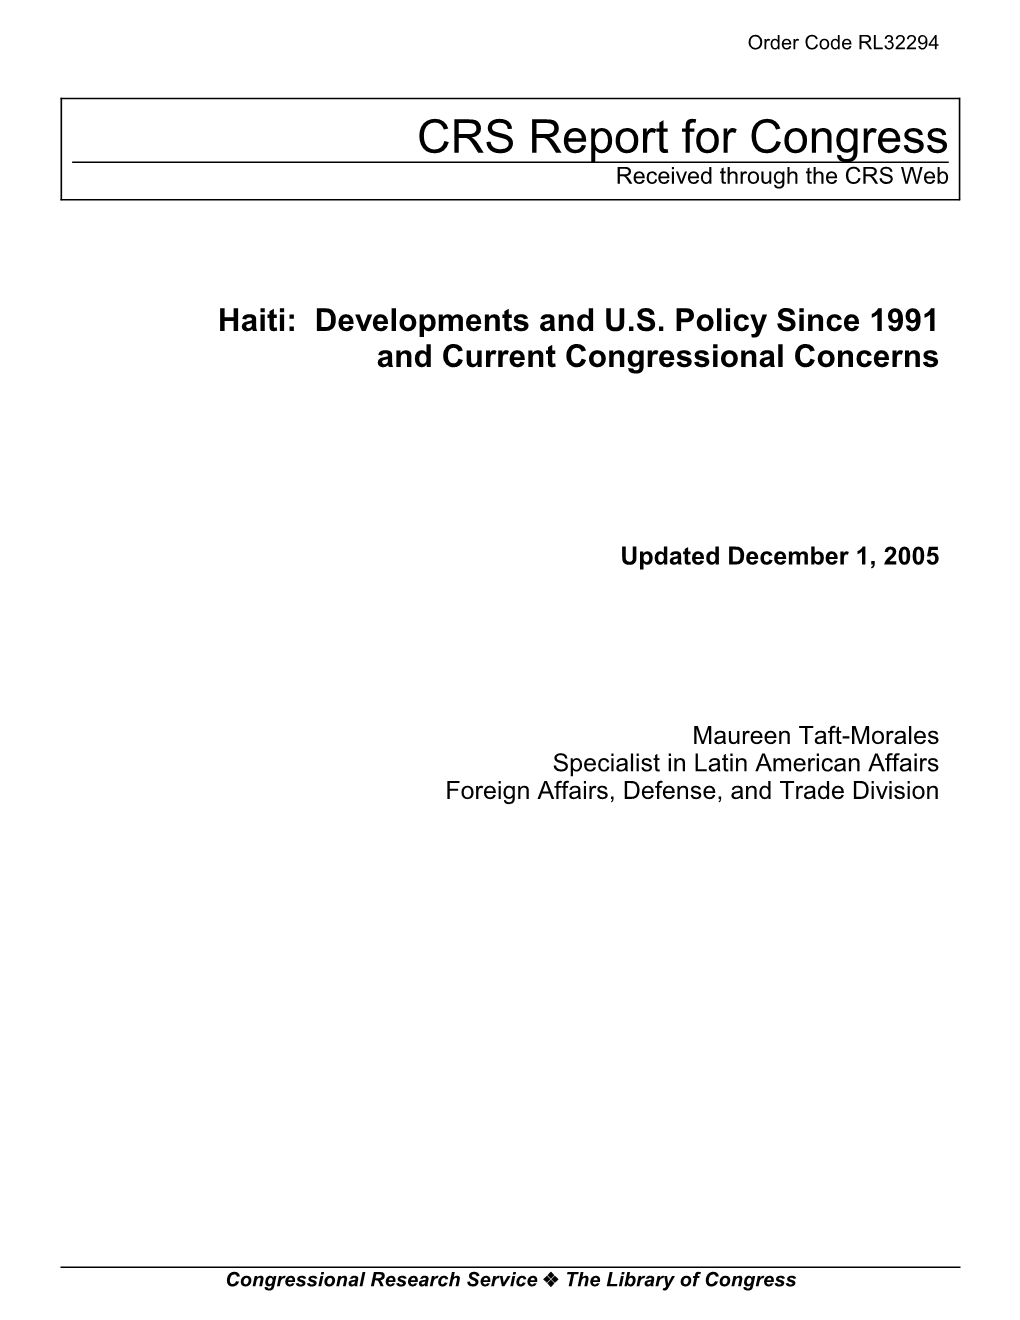 Haiti: Developments and U.S